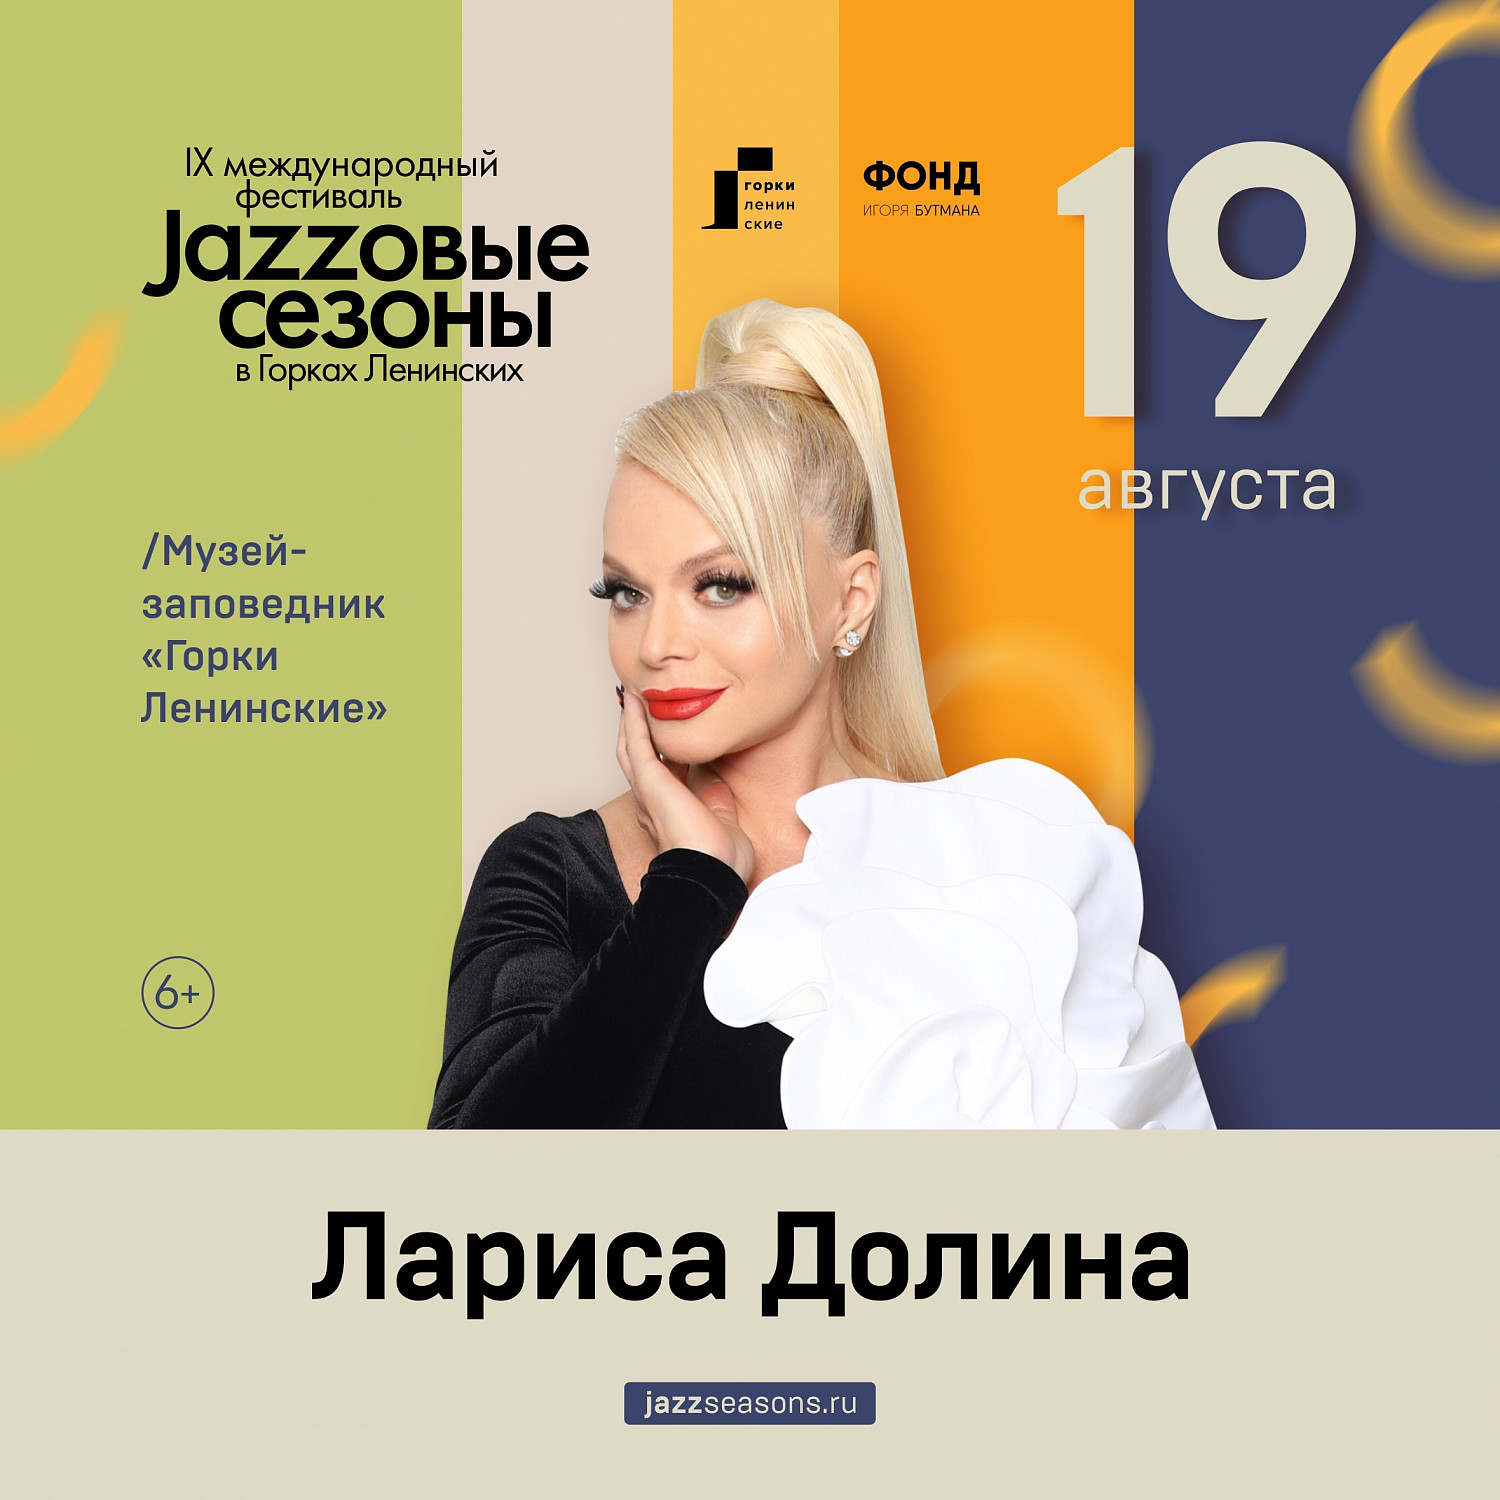 Бесплатные шаттлы будут ходить от метро «Домодедовская» в дни проведения фестиваля «Джазовые сезоны»